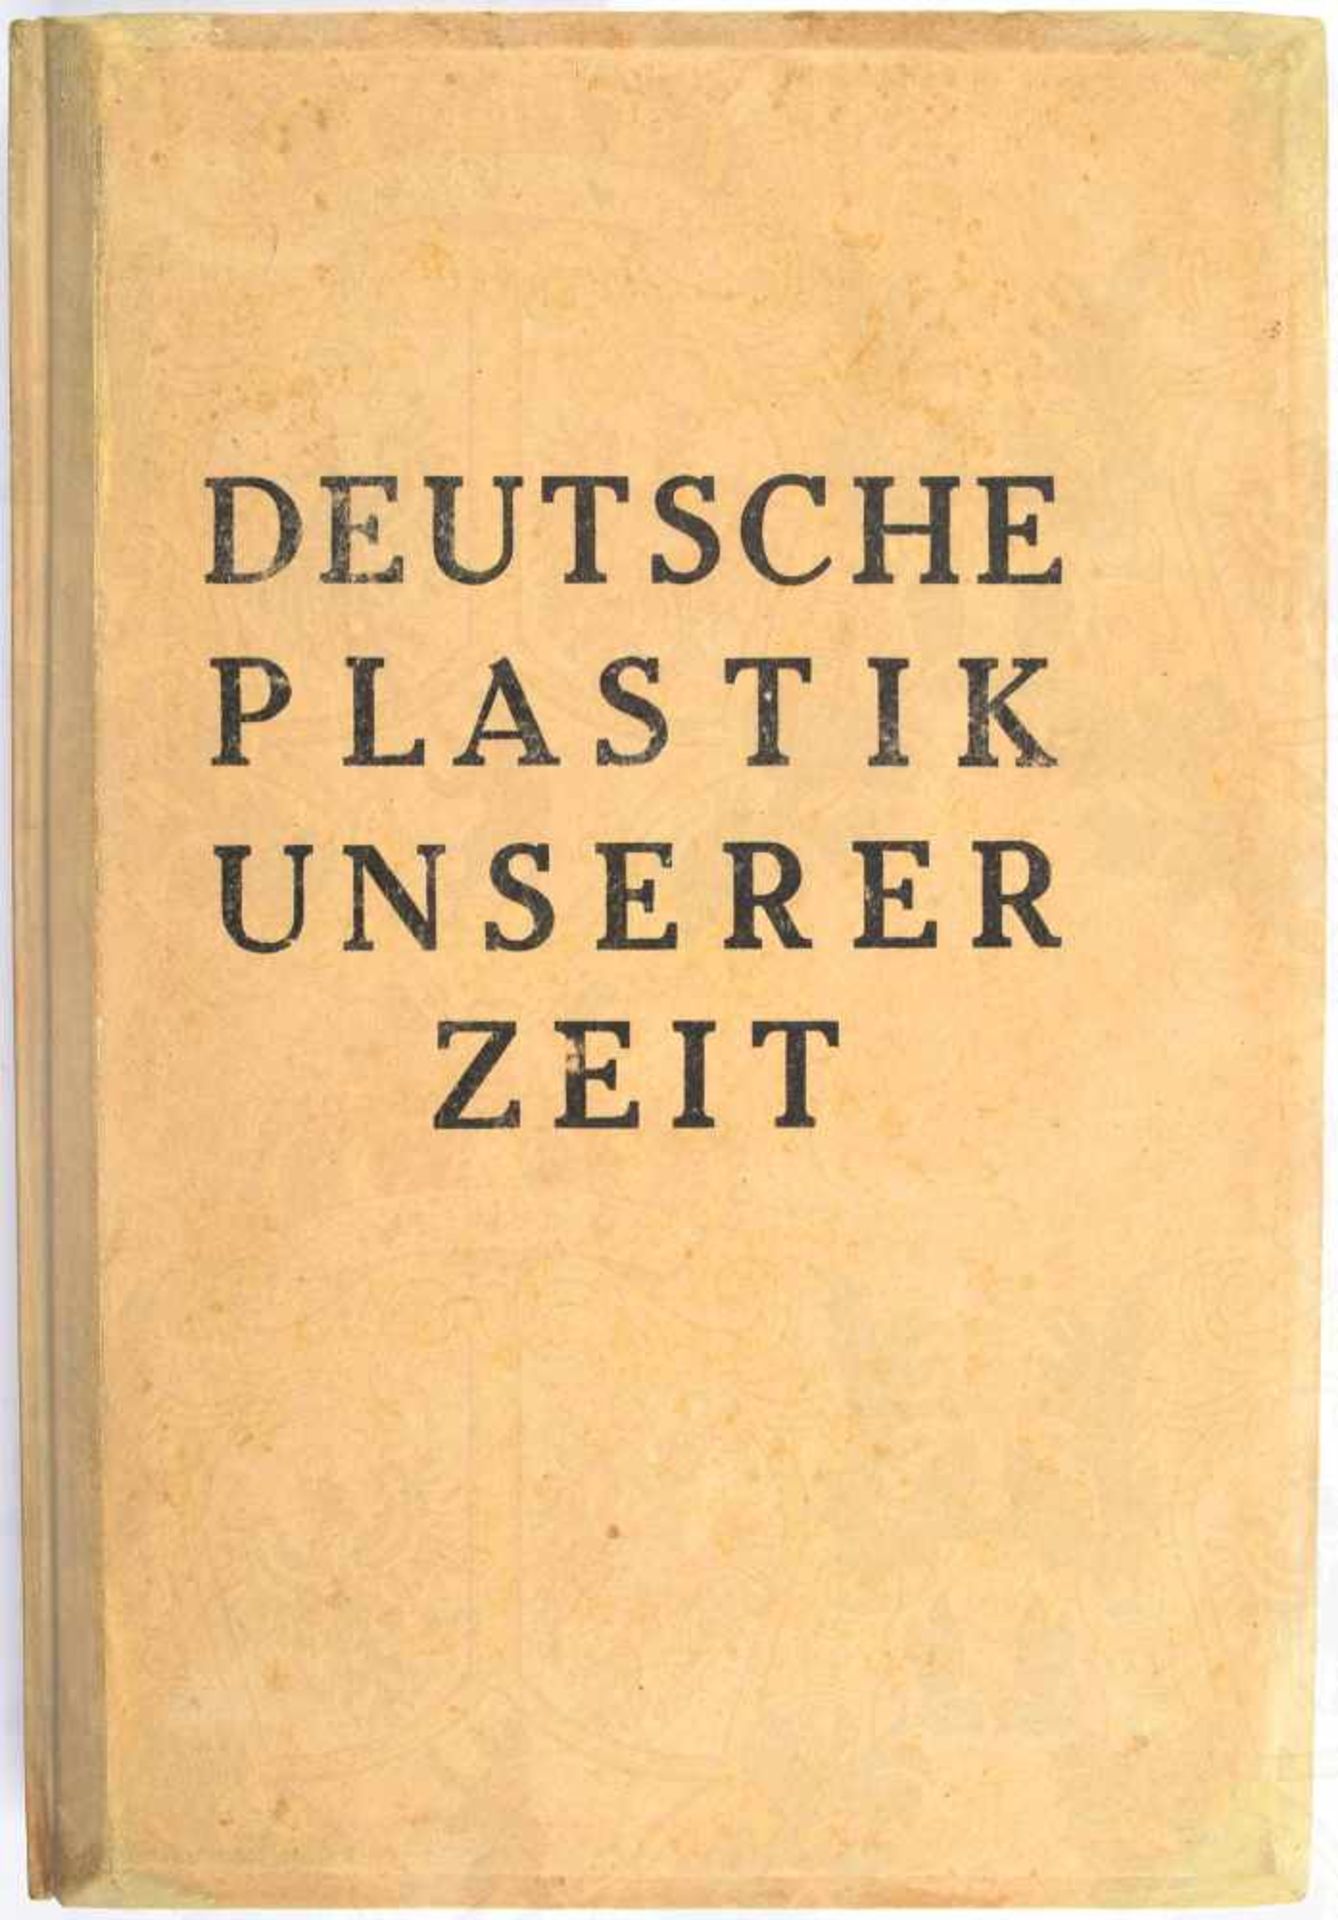 DEUTSCHE PLASTIK UNSERER ZEIT, Verlag Schönstein, München 1942, kpl. mit 135 Bildern, 118 Textseiten